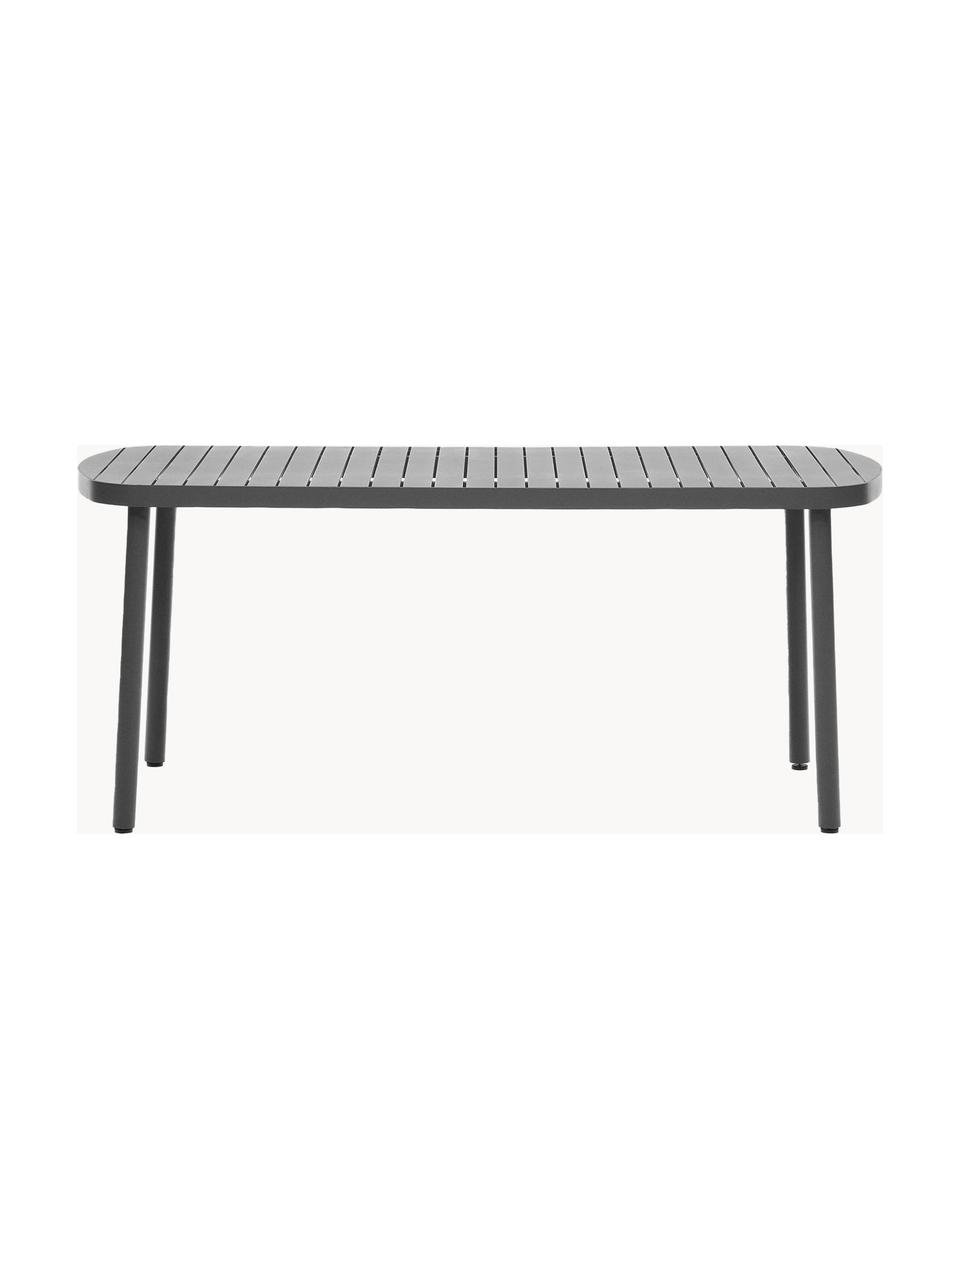 Table de jardin en métal Joncols, Aluminium, revêtement par poudre, Anthracite, larg. 180 x prof. 90 cm